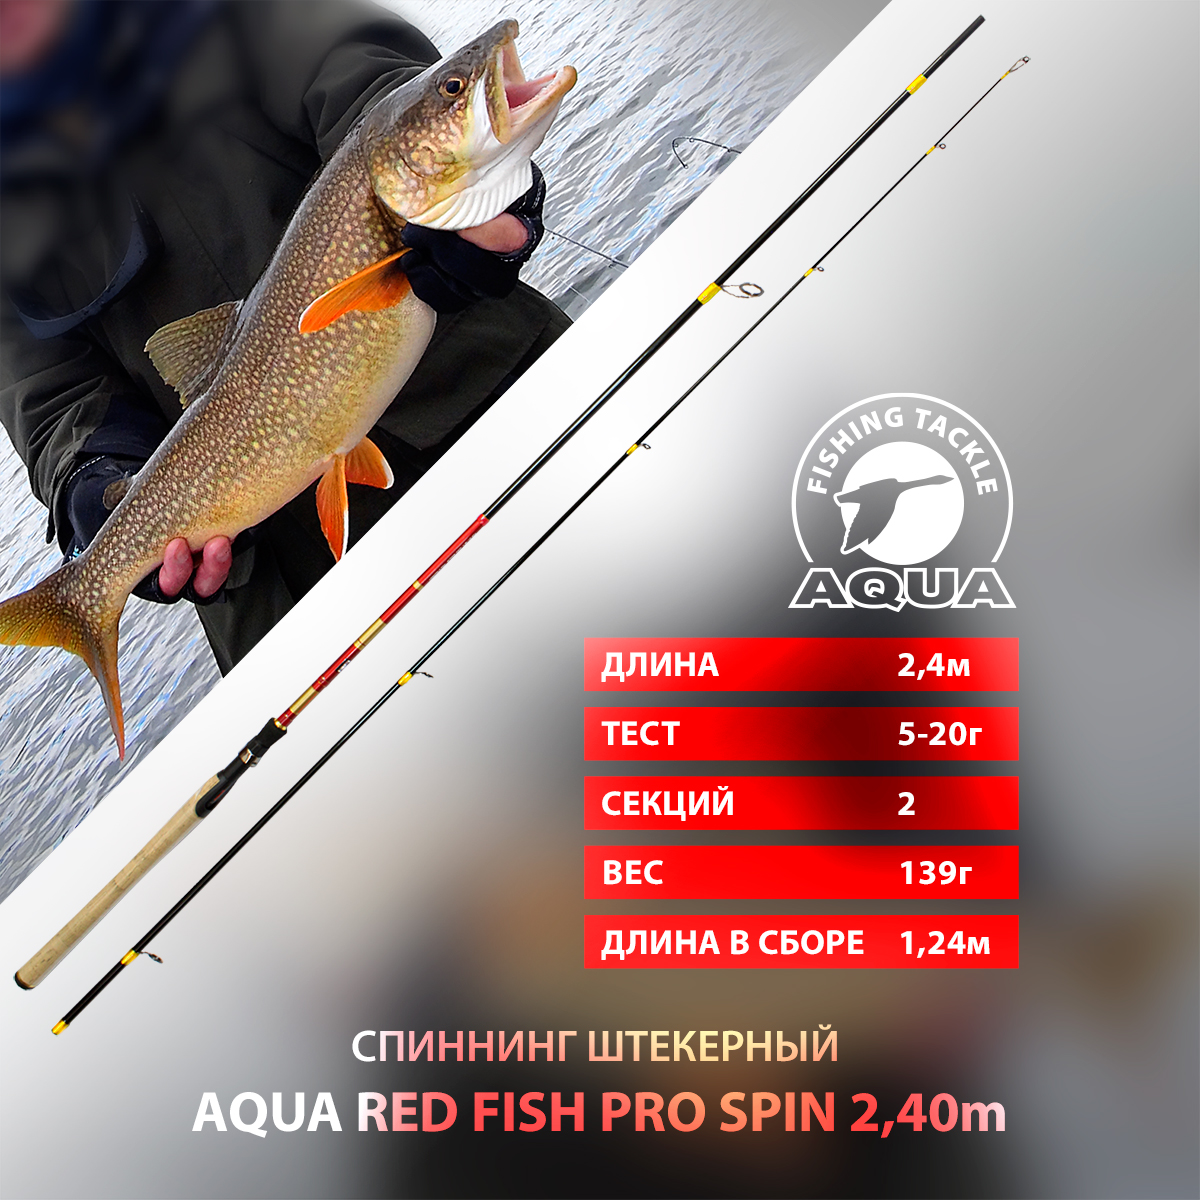 Спиннинг штекерный AQUA RED FISH PRO SPIN